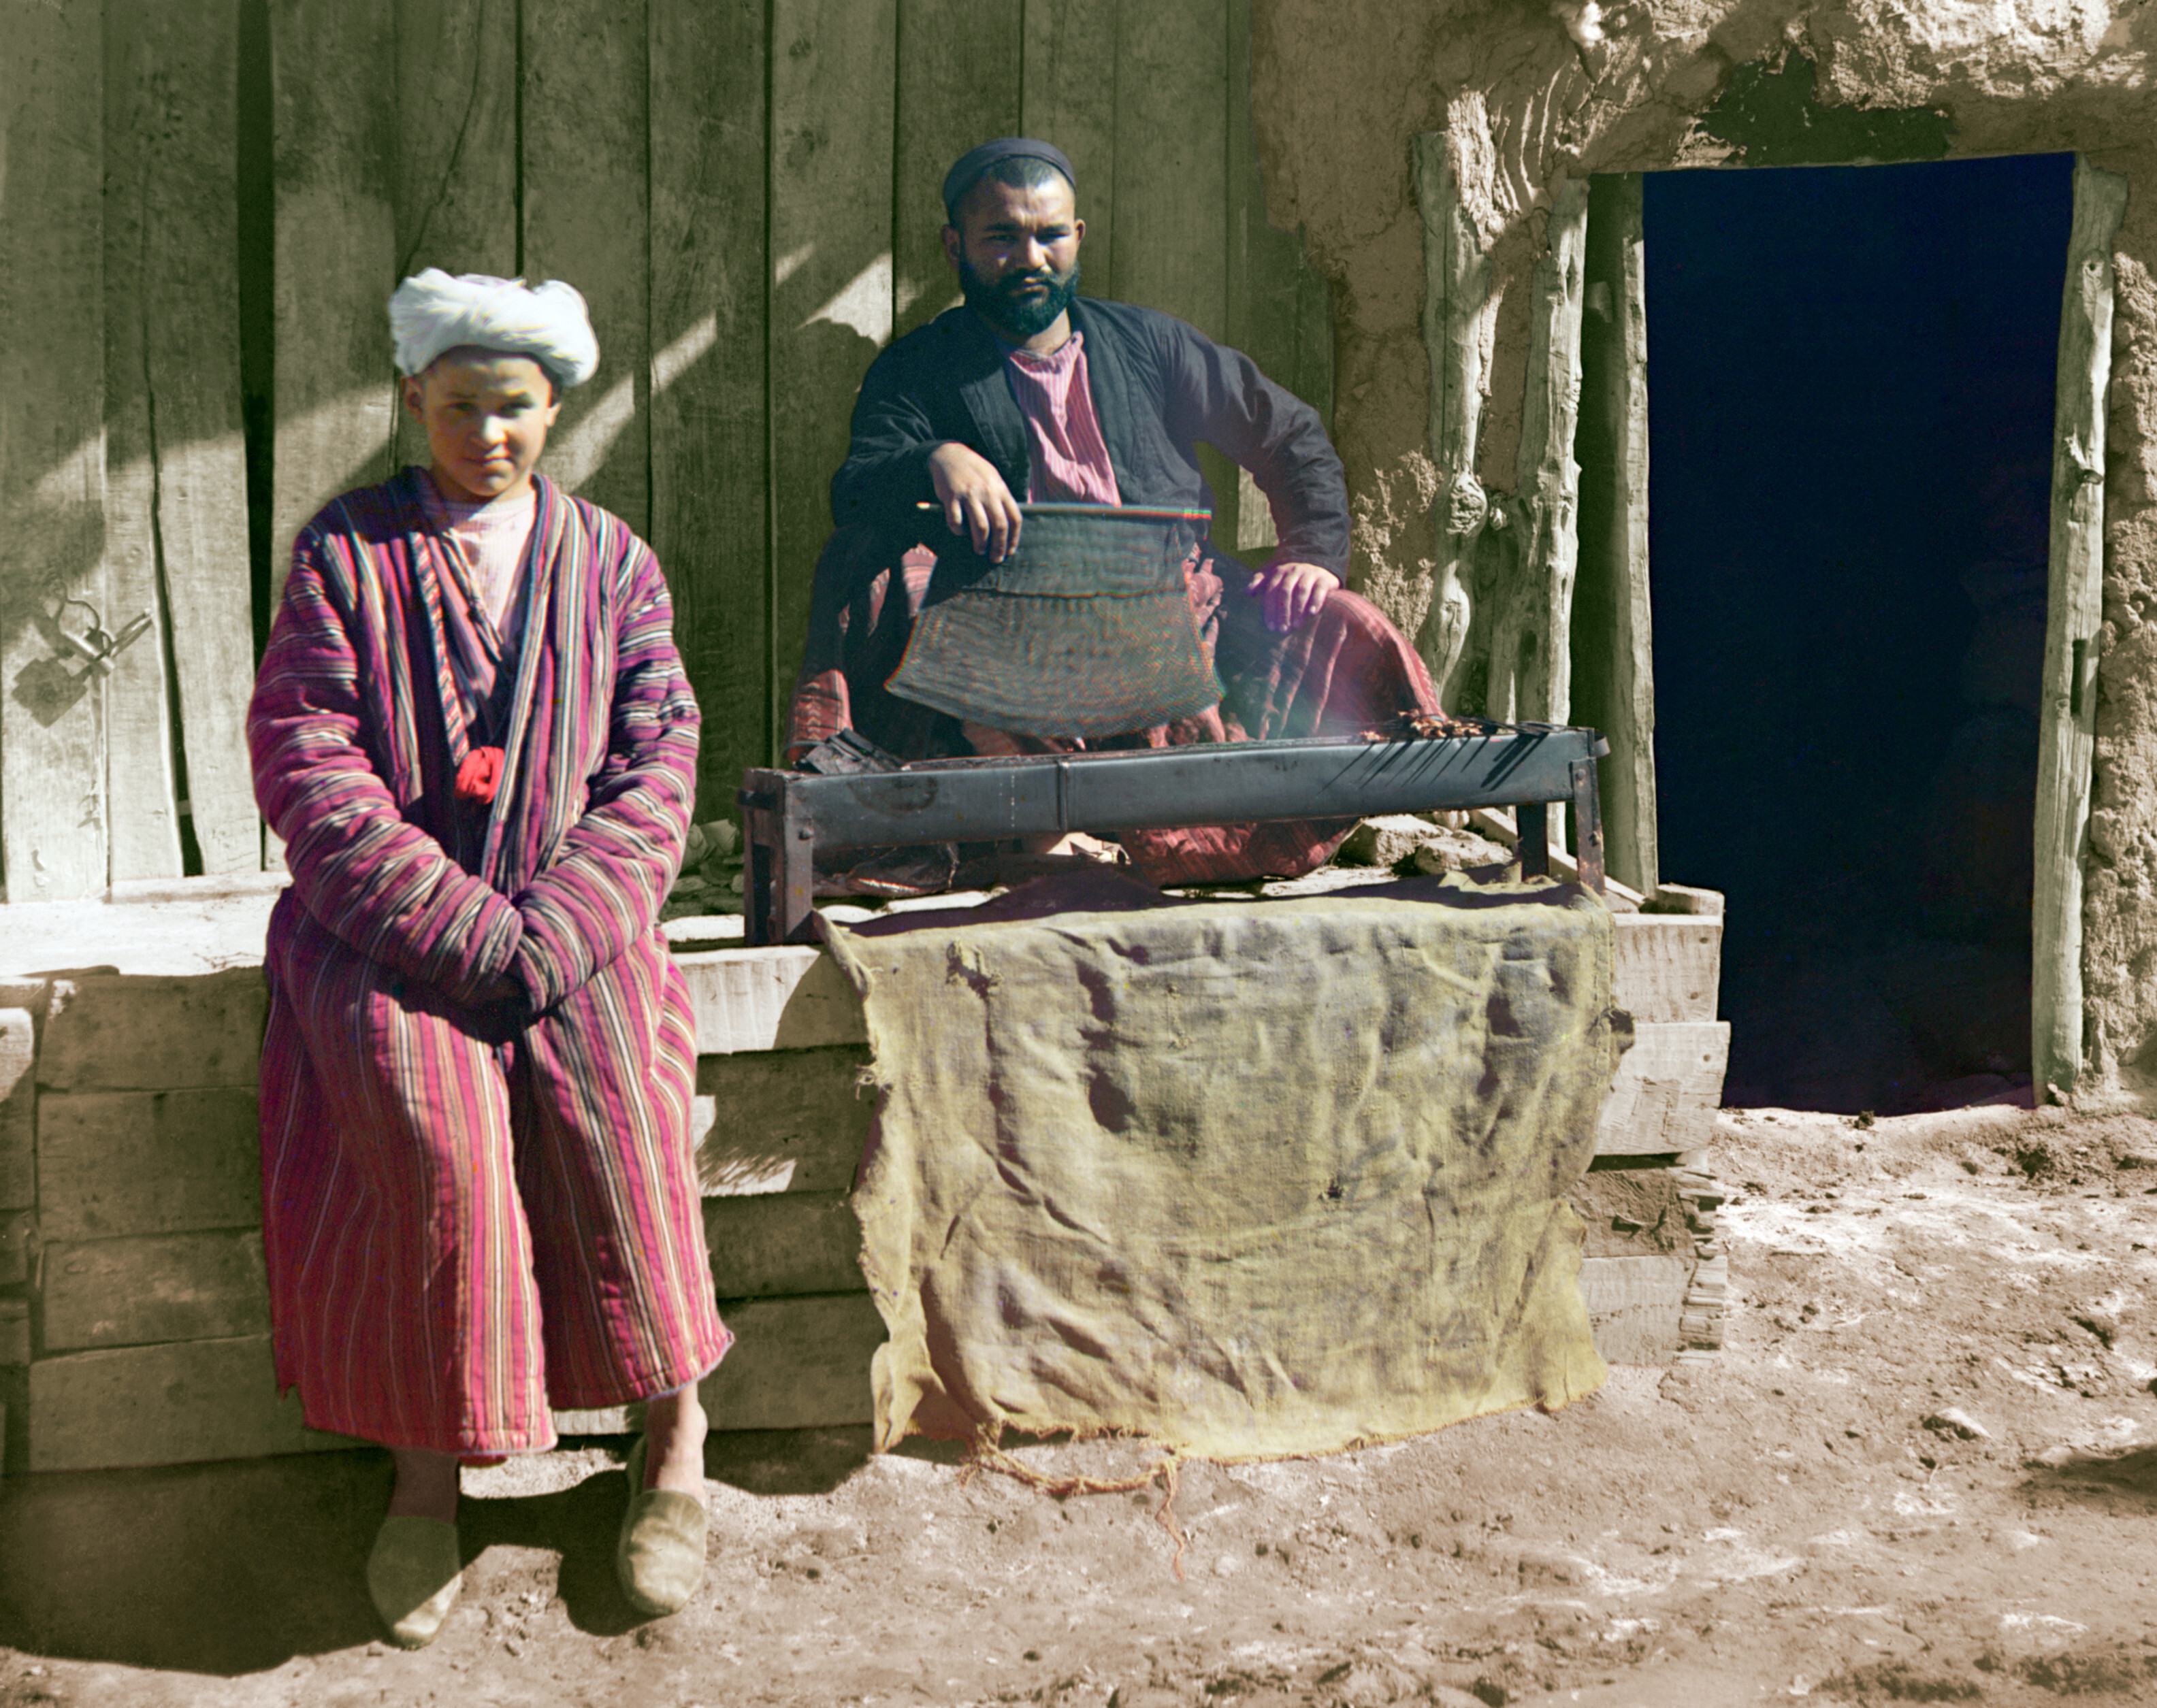 Кебабный ресторан. Самарканд, 1905-1915, фотограф Сергей Прокудин-Горский